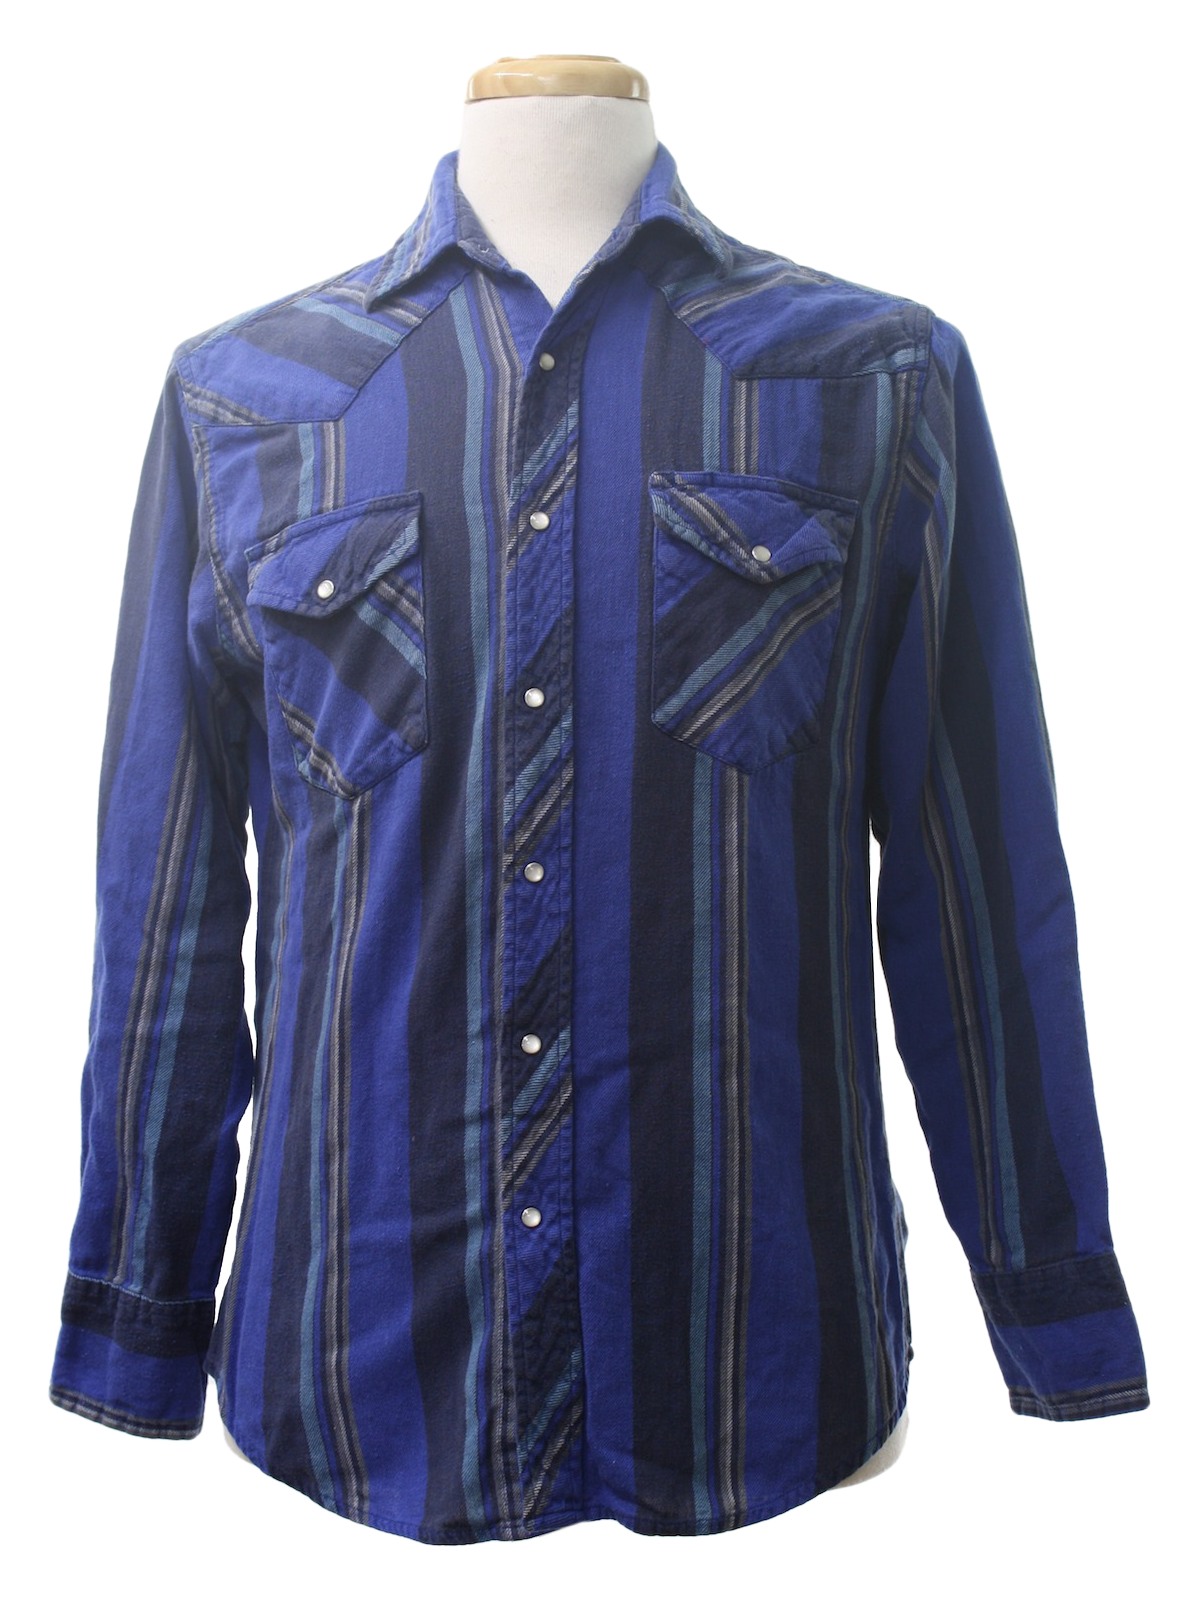 Retro 1980s Western Shirt: 80s -Wrangler- Mens cobalt blue, black ...